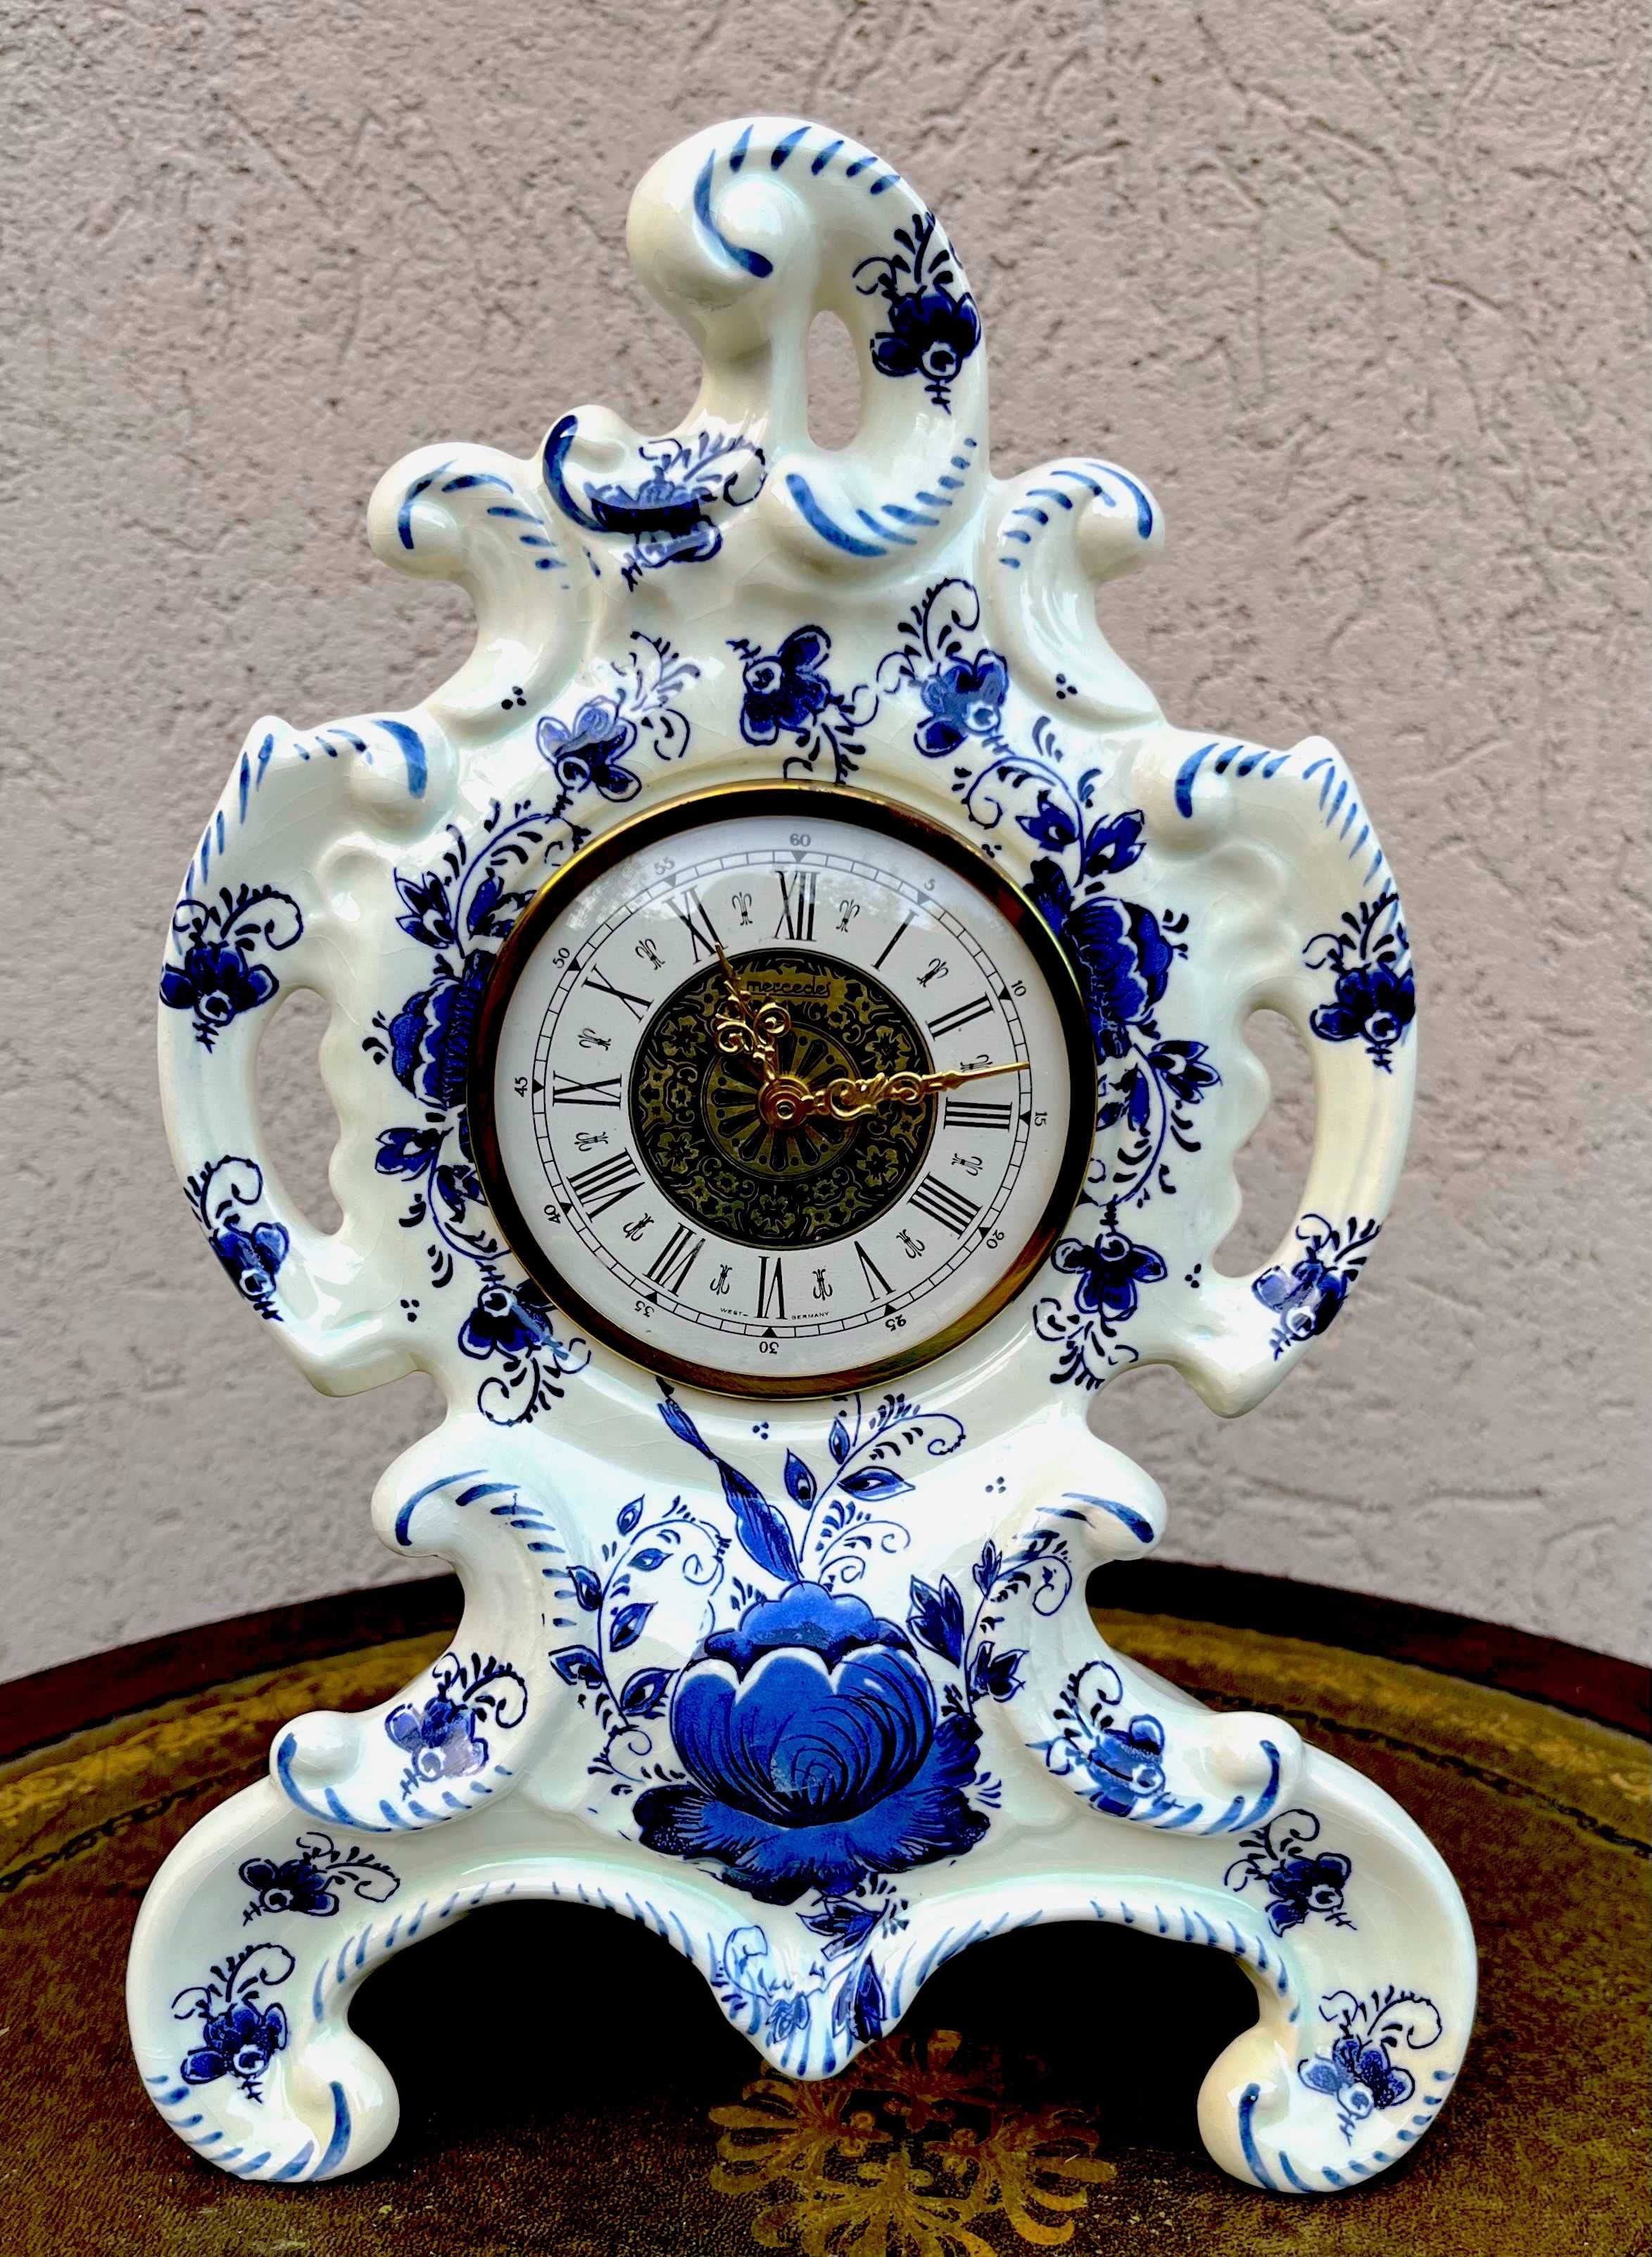 Rafinat ceas Delft-ceramica armonios decorata-marcat-Olanda